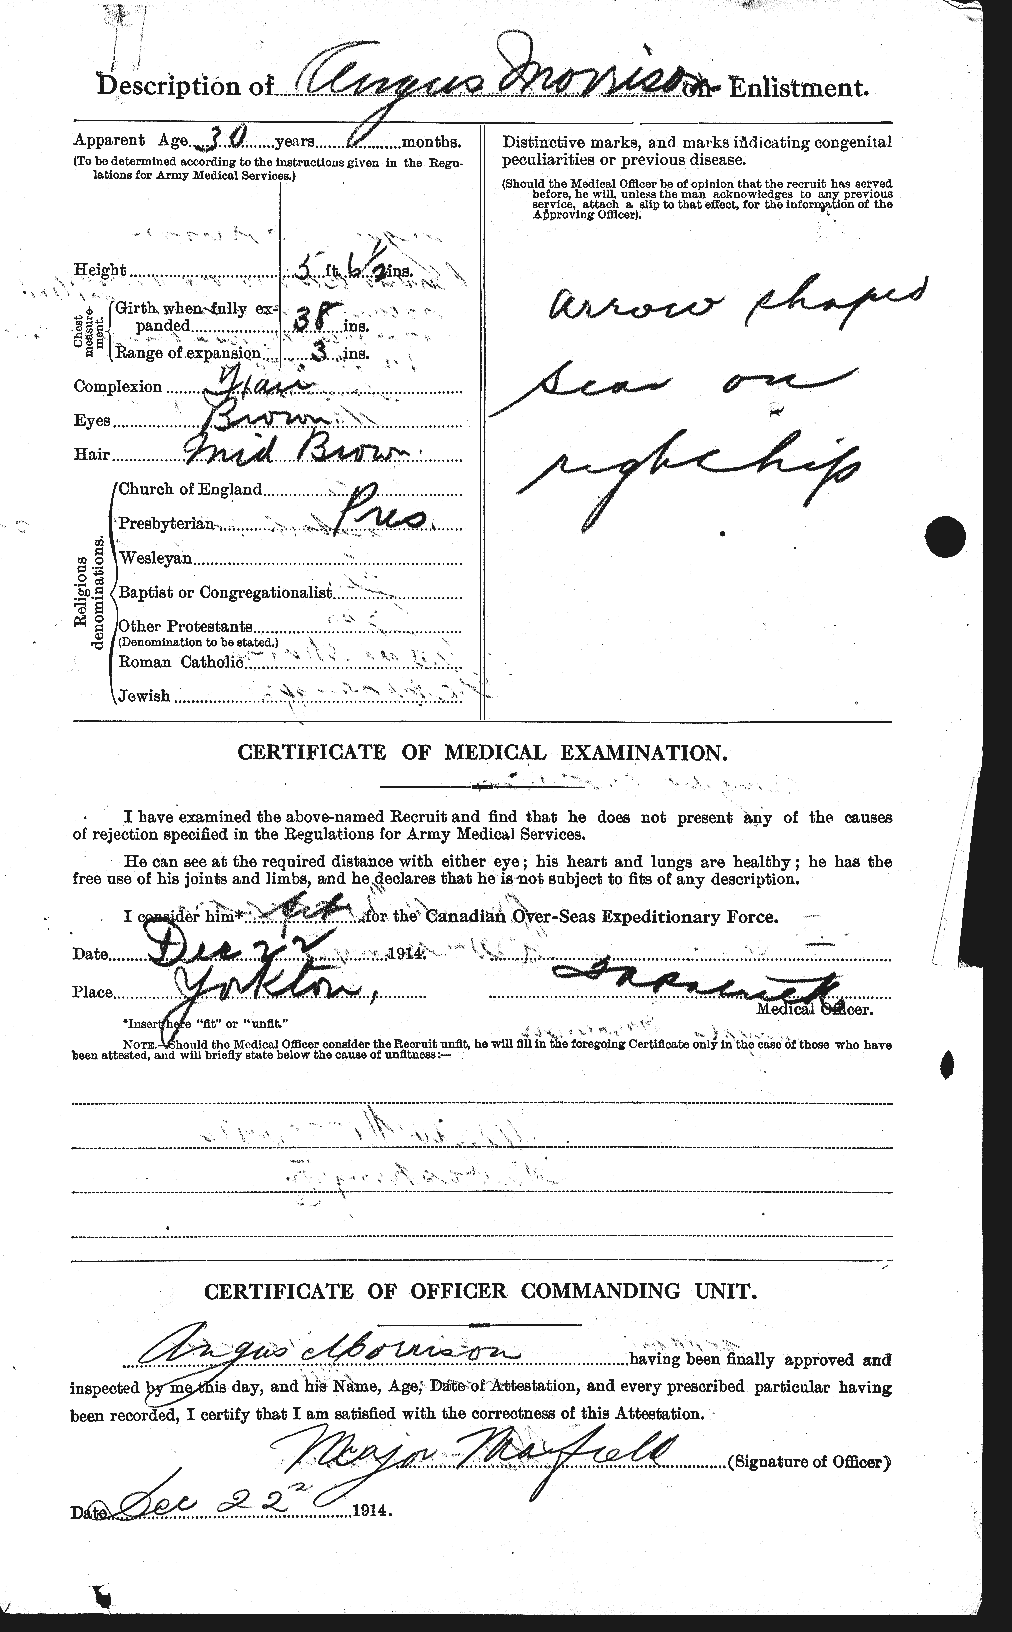 Dossiers du Personnel de la Première Guerre mondiale - CEC 511035b